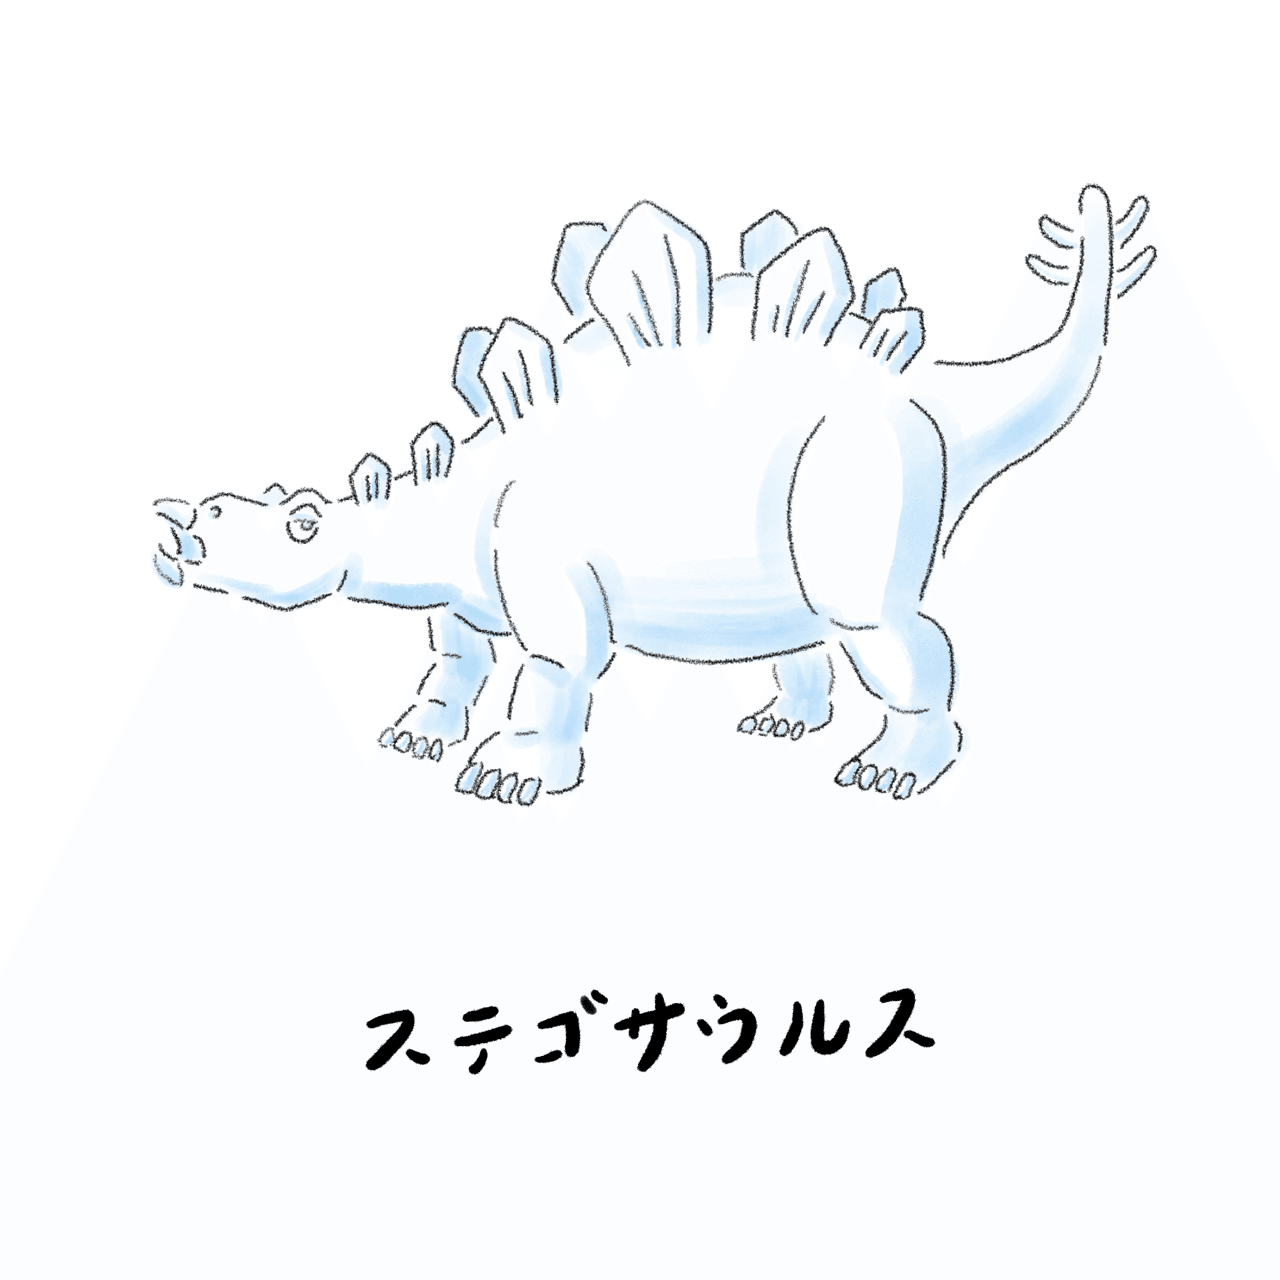 今日はステゴサウルスを描きました 恐竜 ステゴサウルス おうち時間 イラスト Ipad Procreate Ponsun ポンさん Note